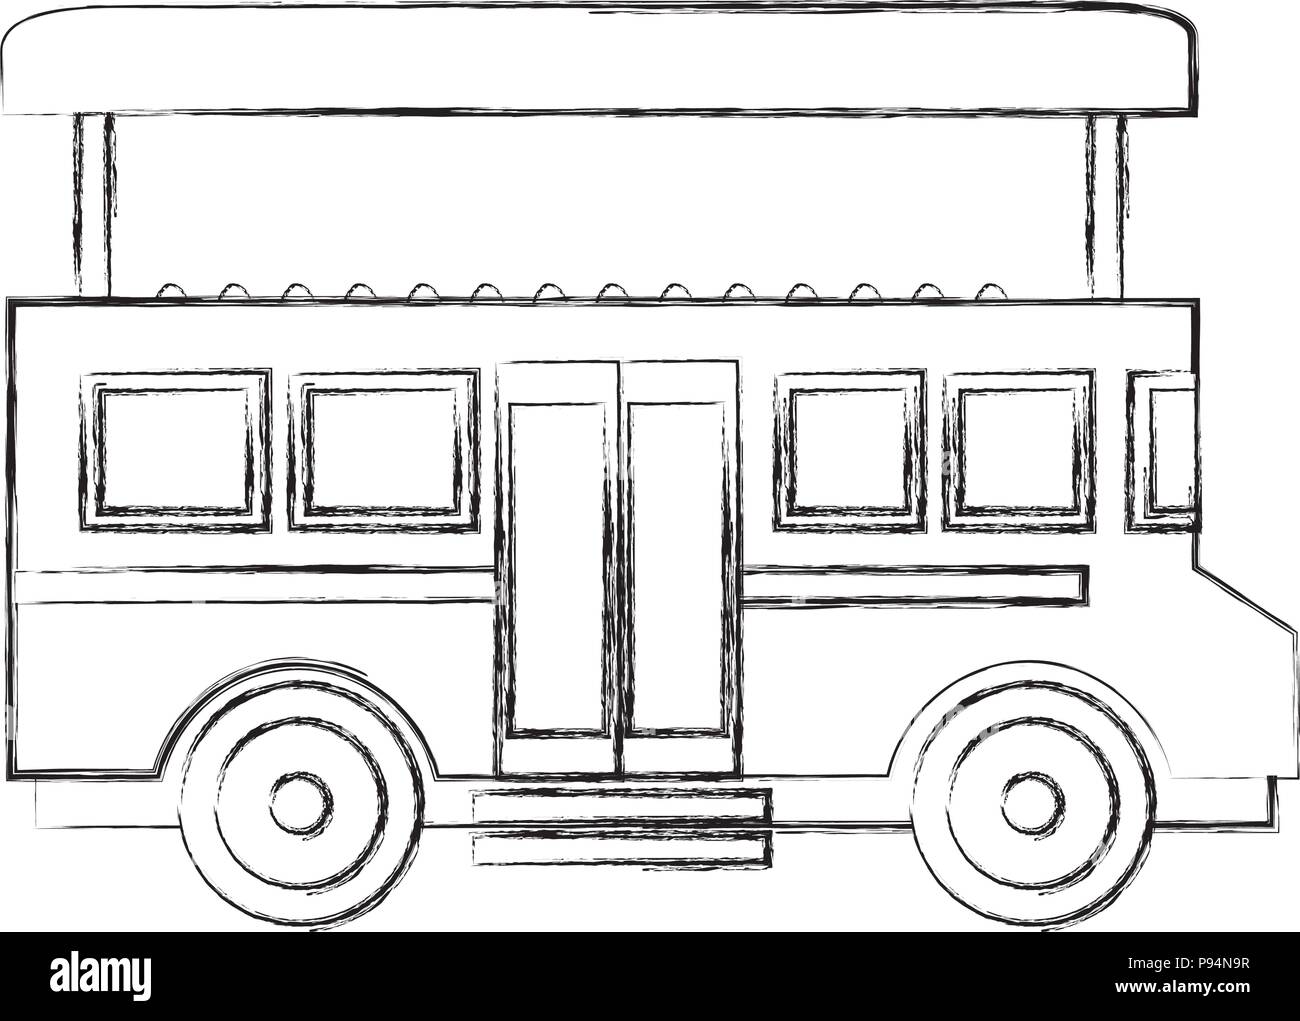 Transport bus à impériale de Londres Illustration de Vecteur